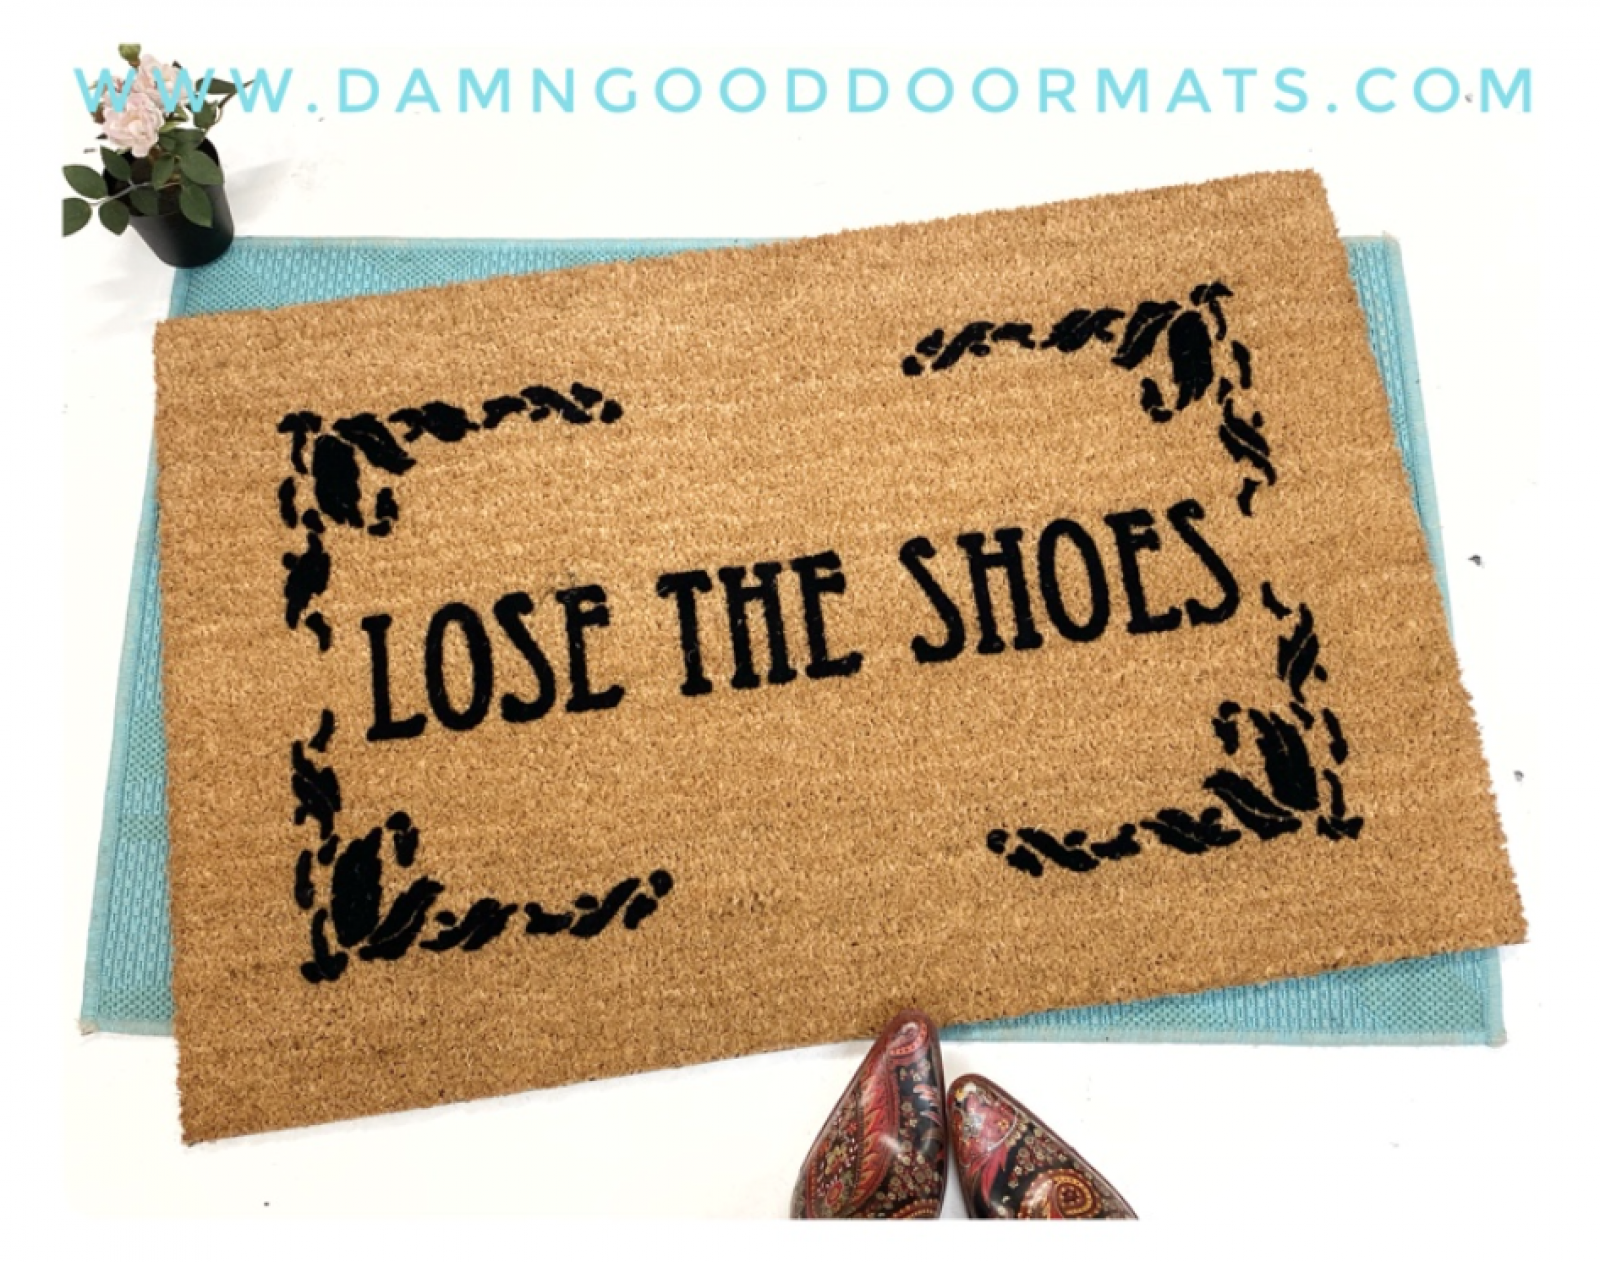 https://www.damngooddoormats.com/sites/damngooddoormats.indiemade.com/files/imagecache/im_clientsite_product_zoom/lose_the_shoes_flocked_damn_good_doormat.png